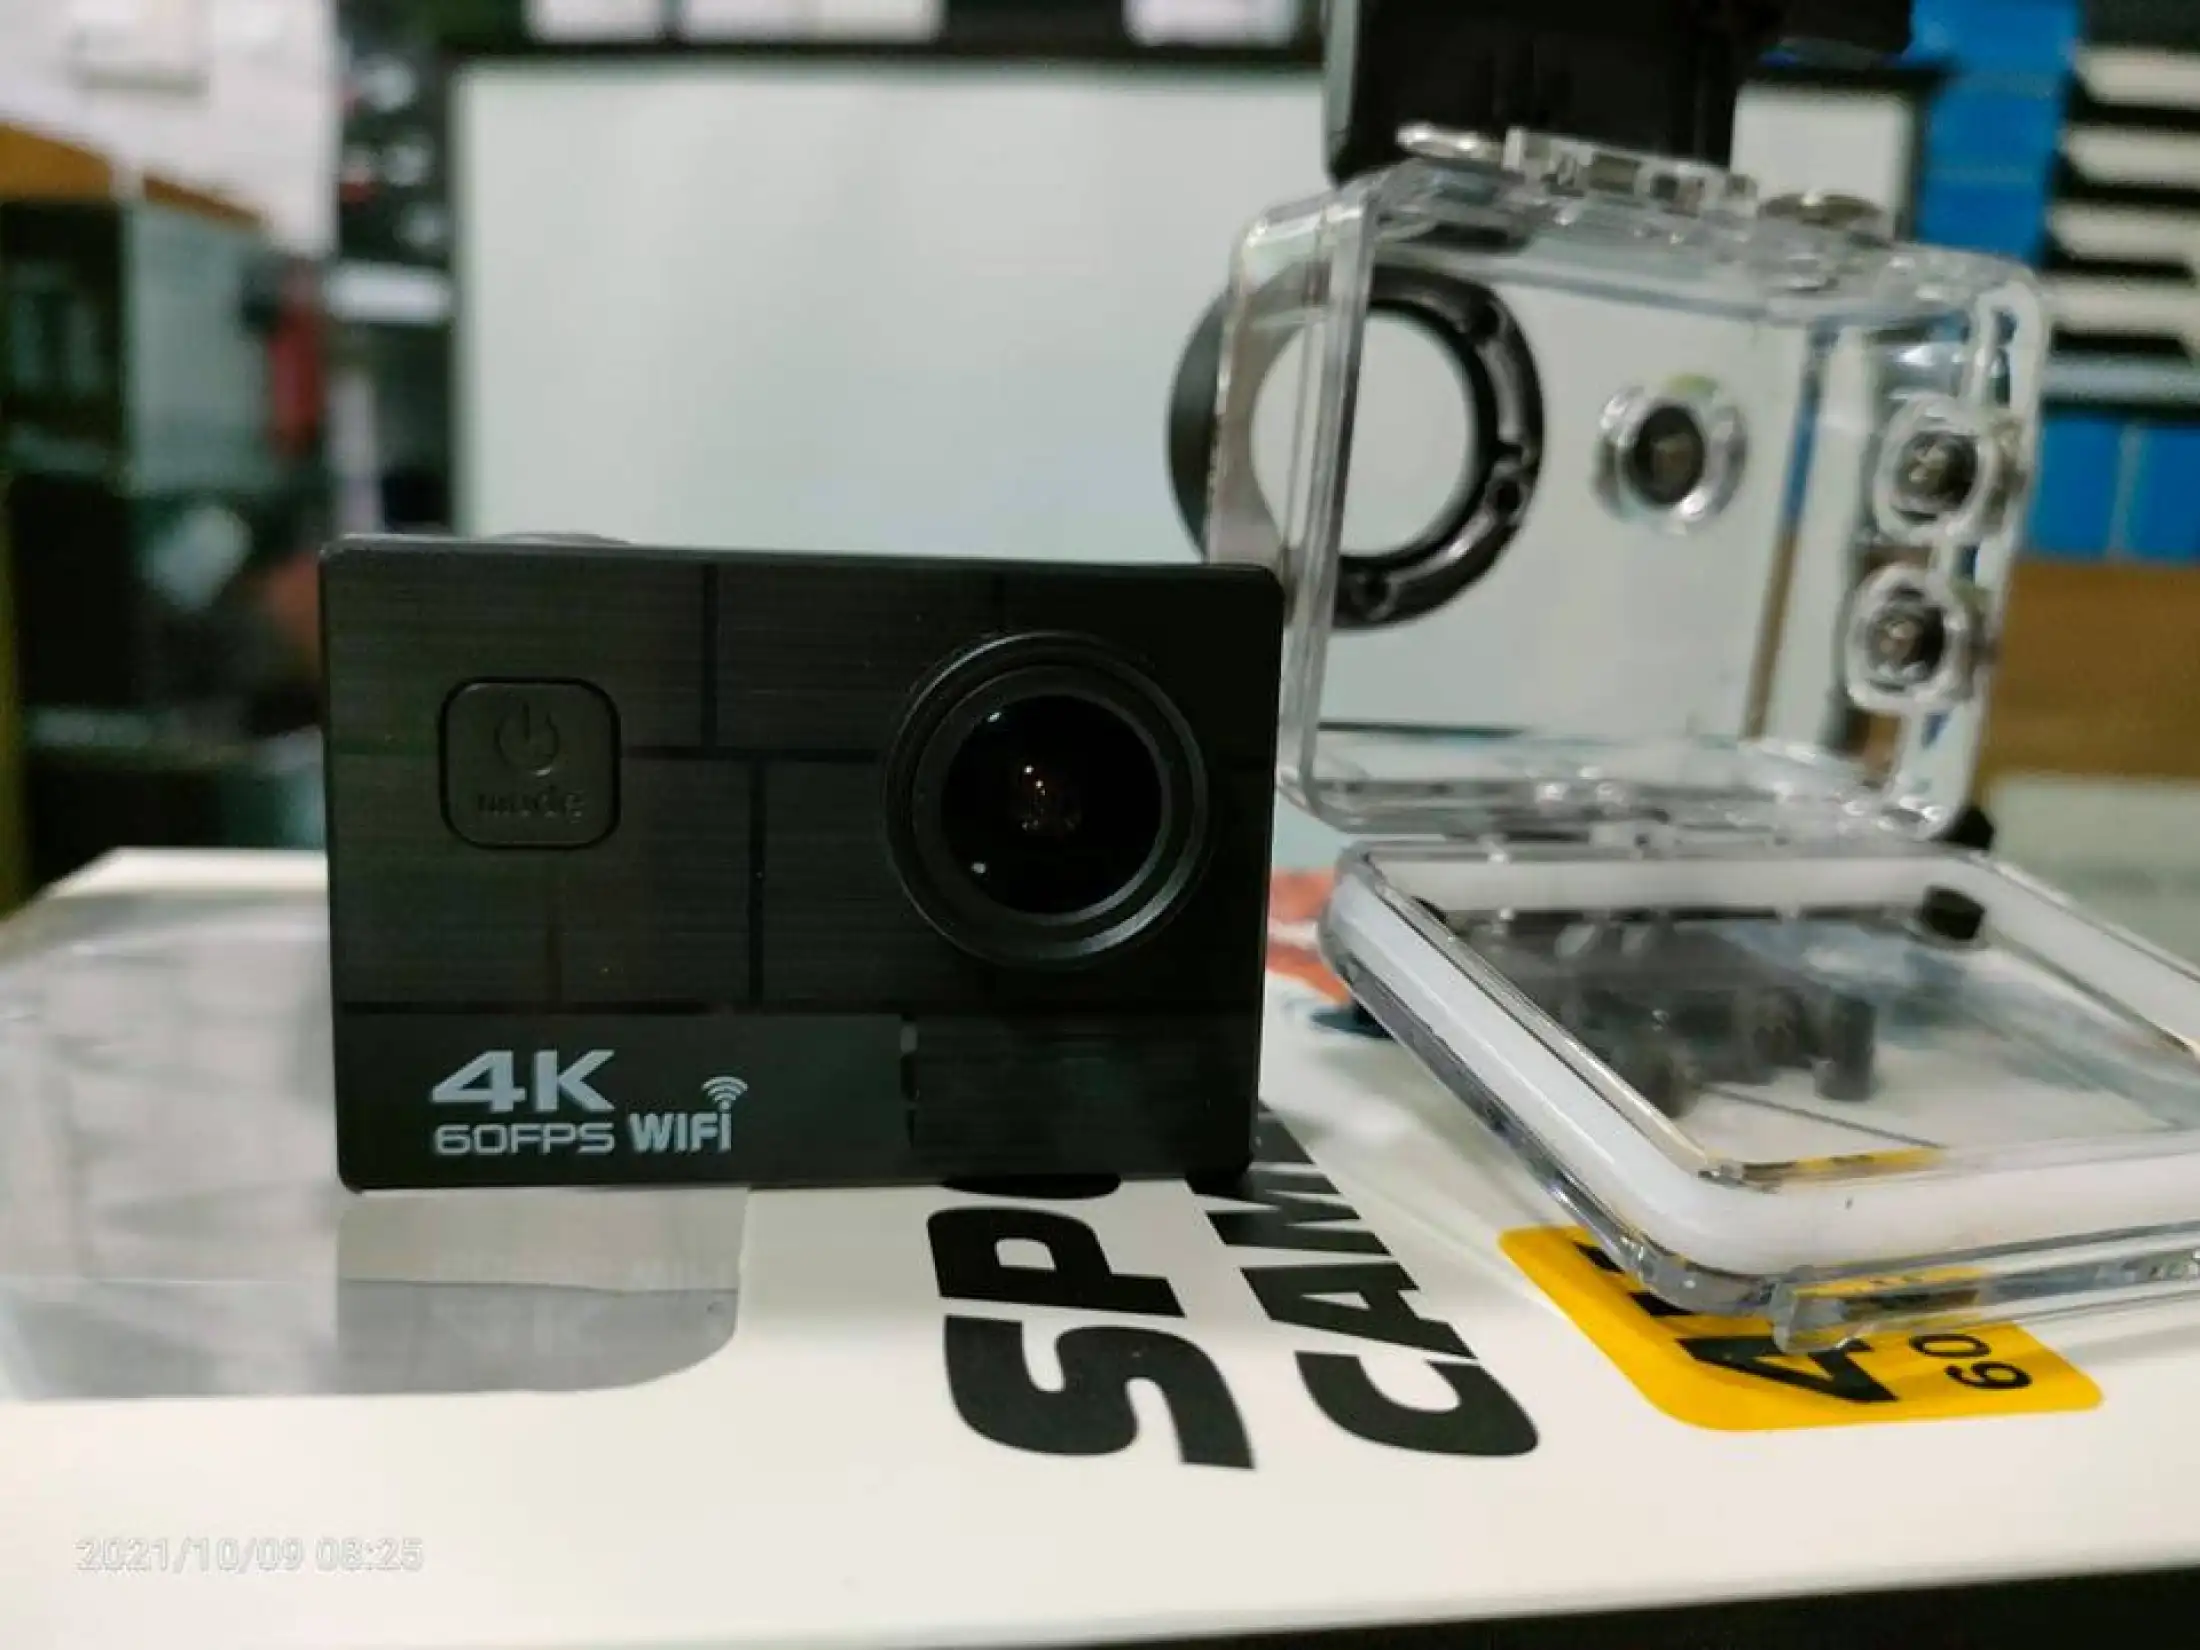 เกี่ยวกับ กล้องกันน้ำ 4K รุ่นใหม่ล่าสุด ถ่ายใต้น้ำ ชัดจริง 4Kแท้แน่นอน พร้อมรีโมท Sport camera Action camera 4K Ultra HD waterproof WIFI FREE Remote (ของแท้ 100%)- แบตอึดที่สุดถึง 1350